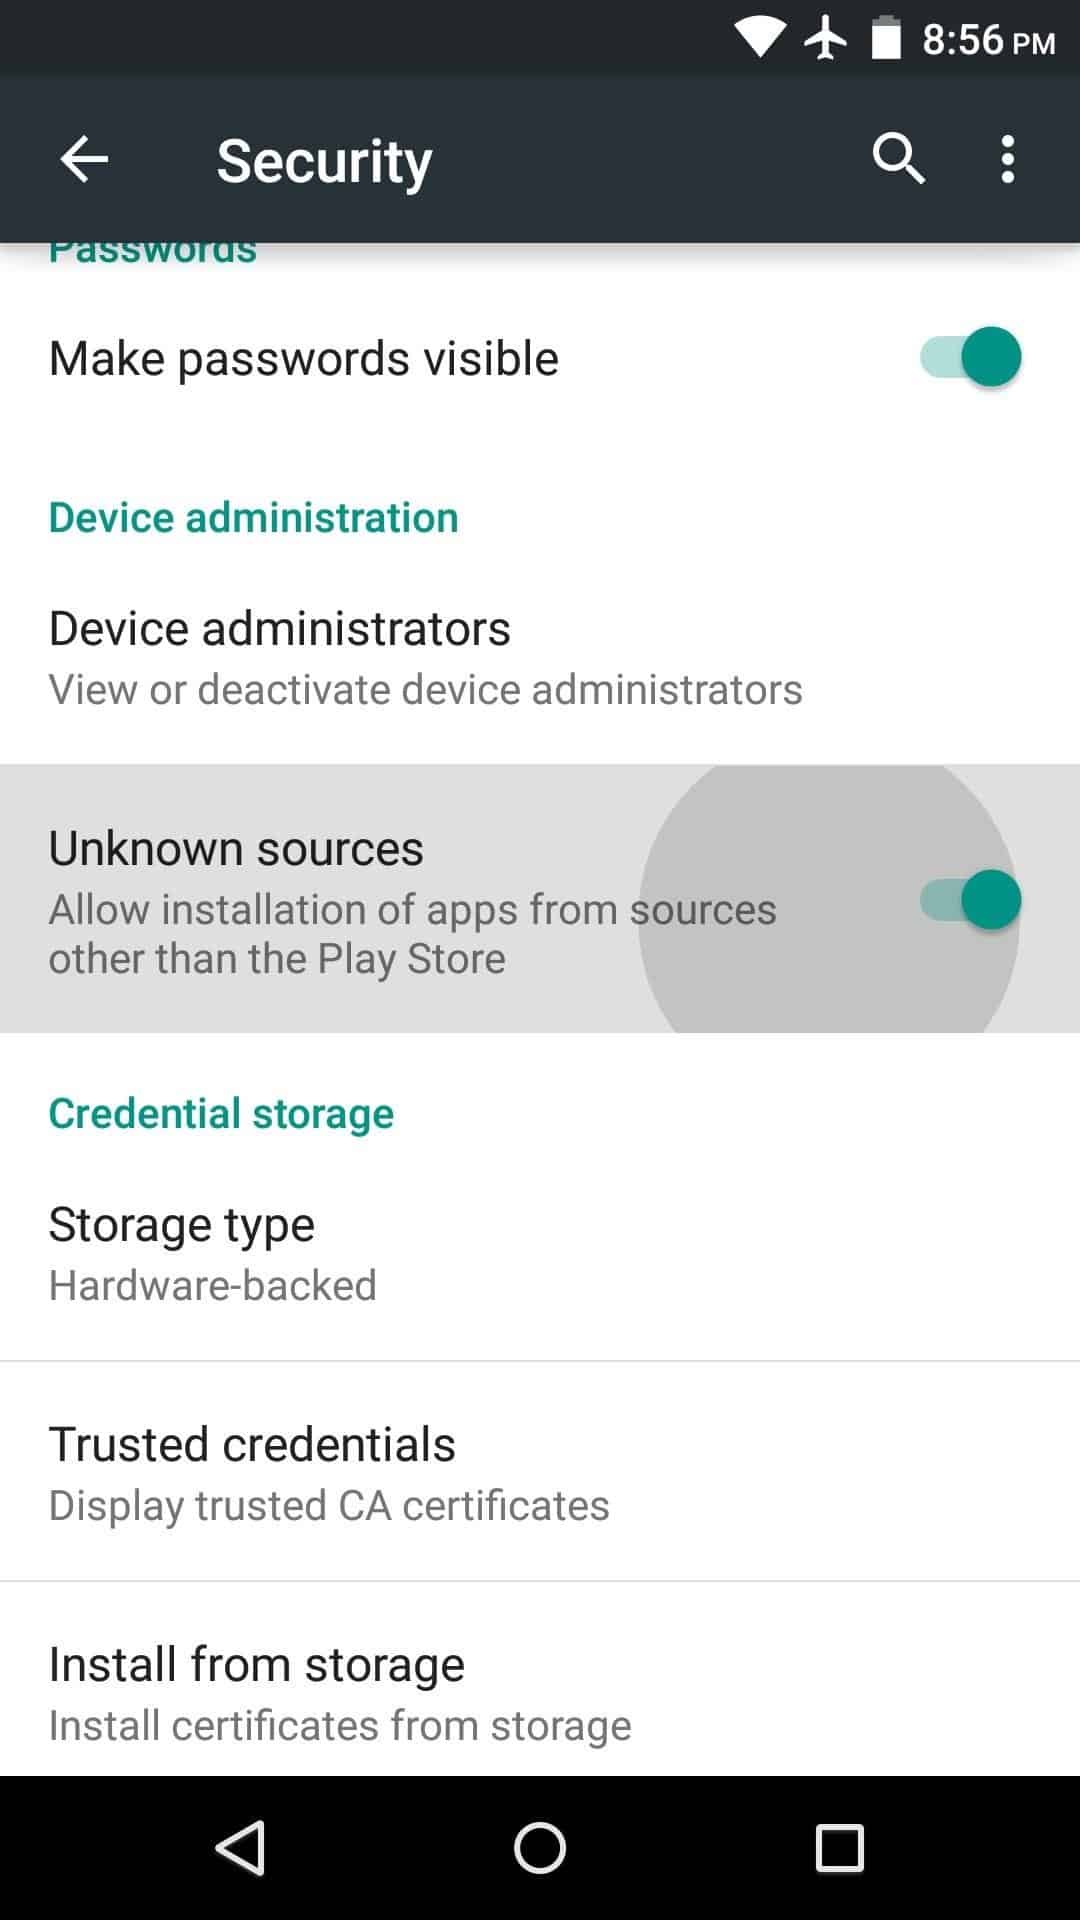 Buka-menu-Pengaturan-di-smartphone-lalu-aktifkan-opsi-Install-Apps-from-Unknown-Sources